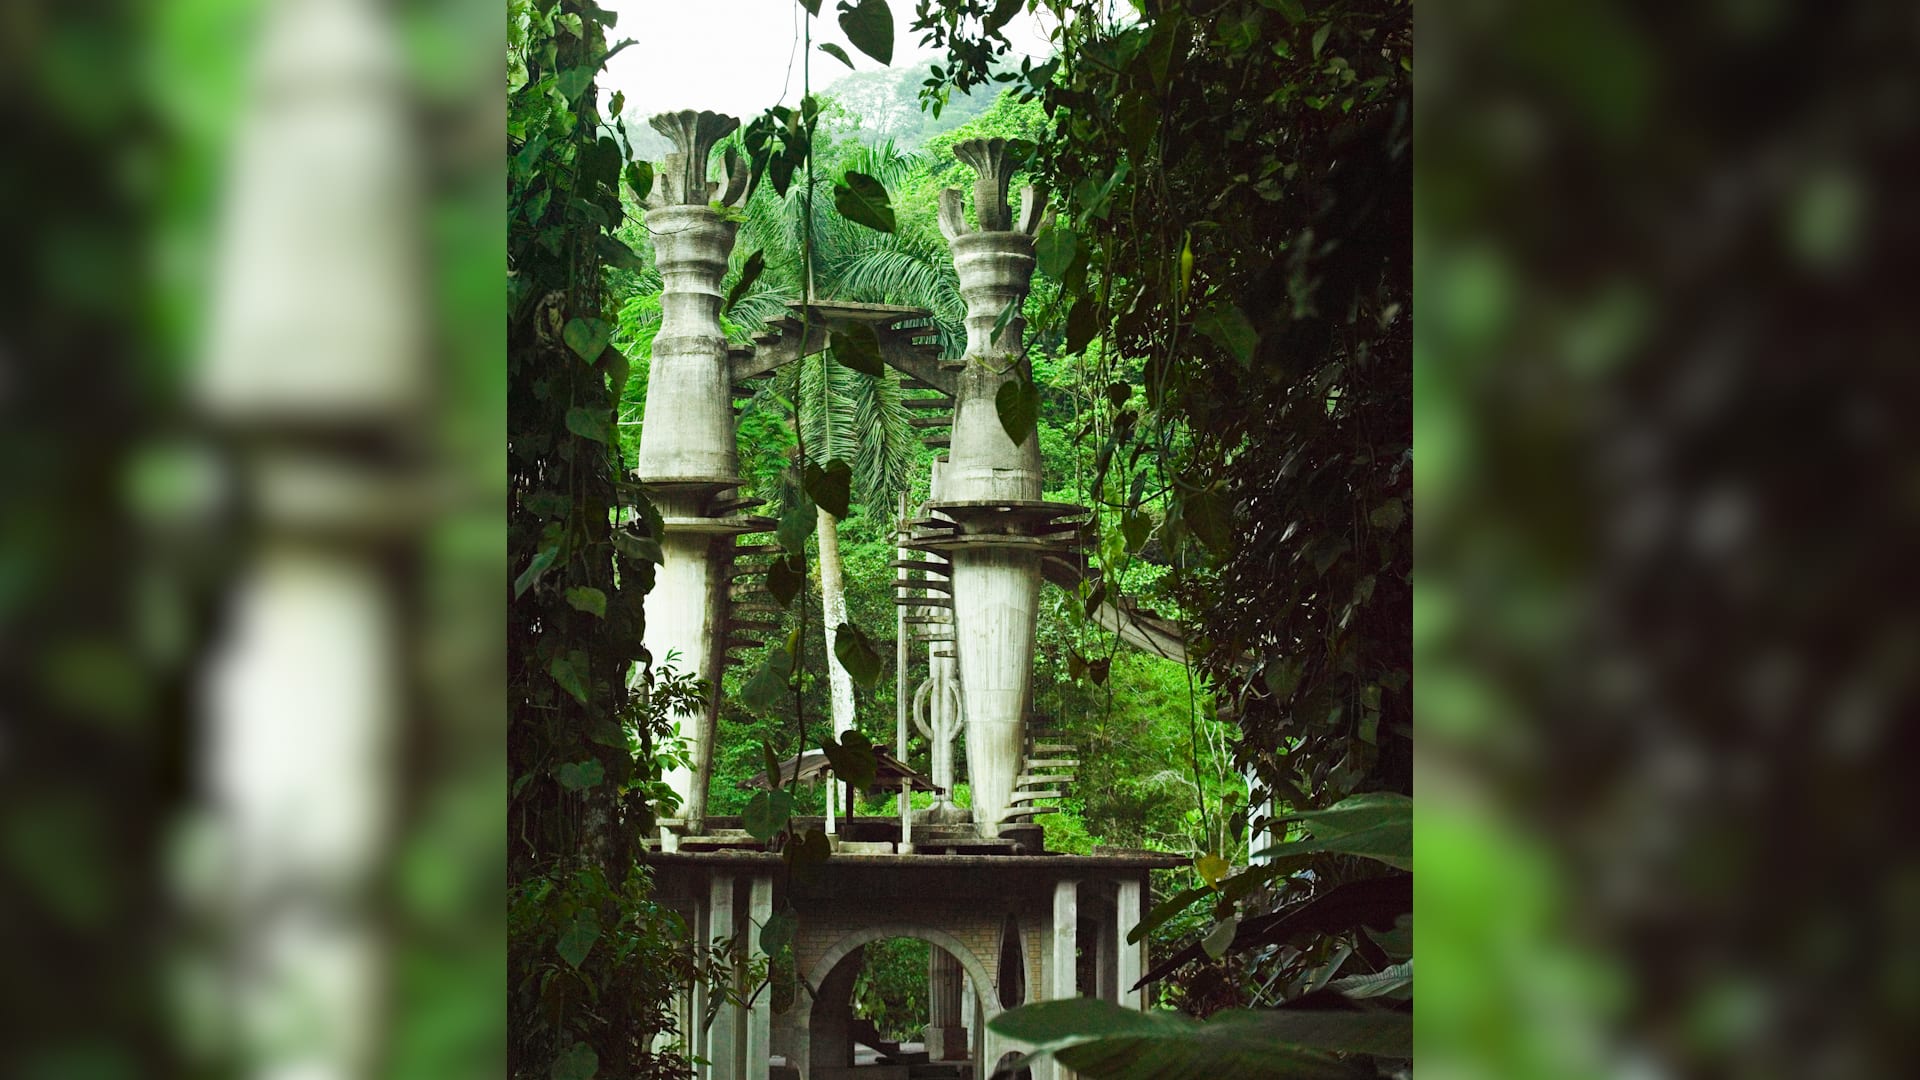 Las Pozas je surrealistická zahrada ukrytá v džungli v mexickém městě Xilitla.